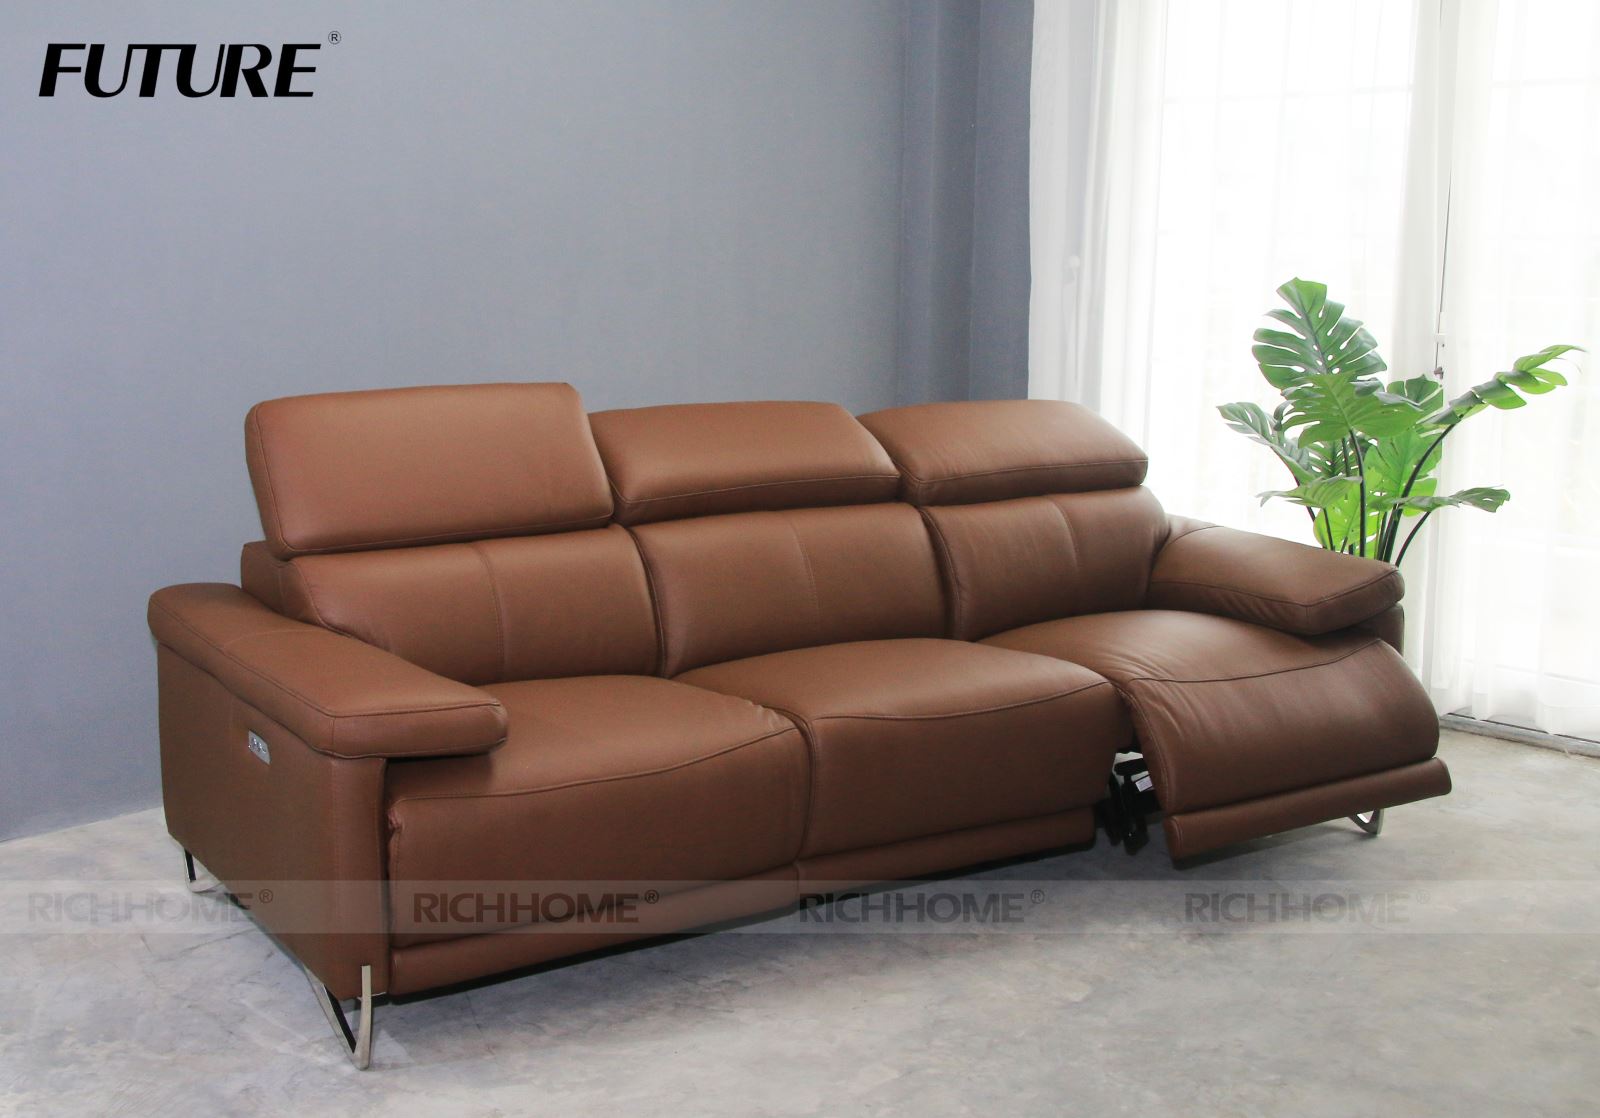 Ghế sofa đa chức năng - thiết kế mới tối ưu hoàn hảo cho không gian nhà bạn - Ảnh 5